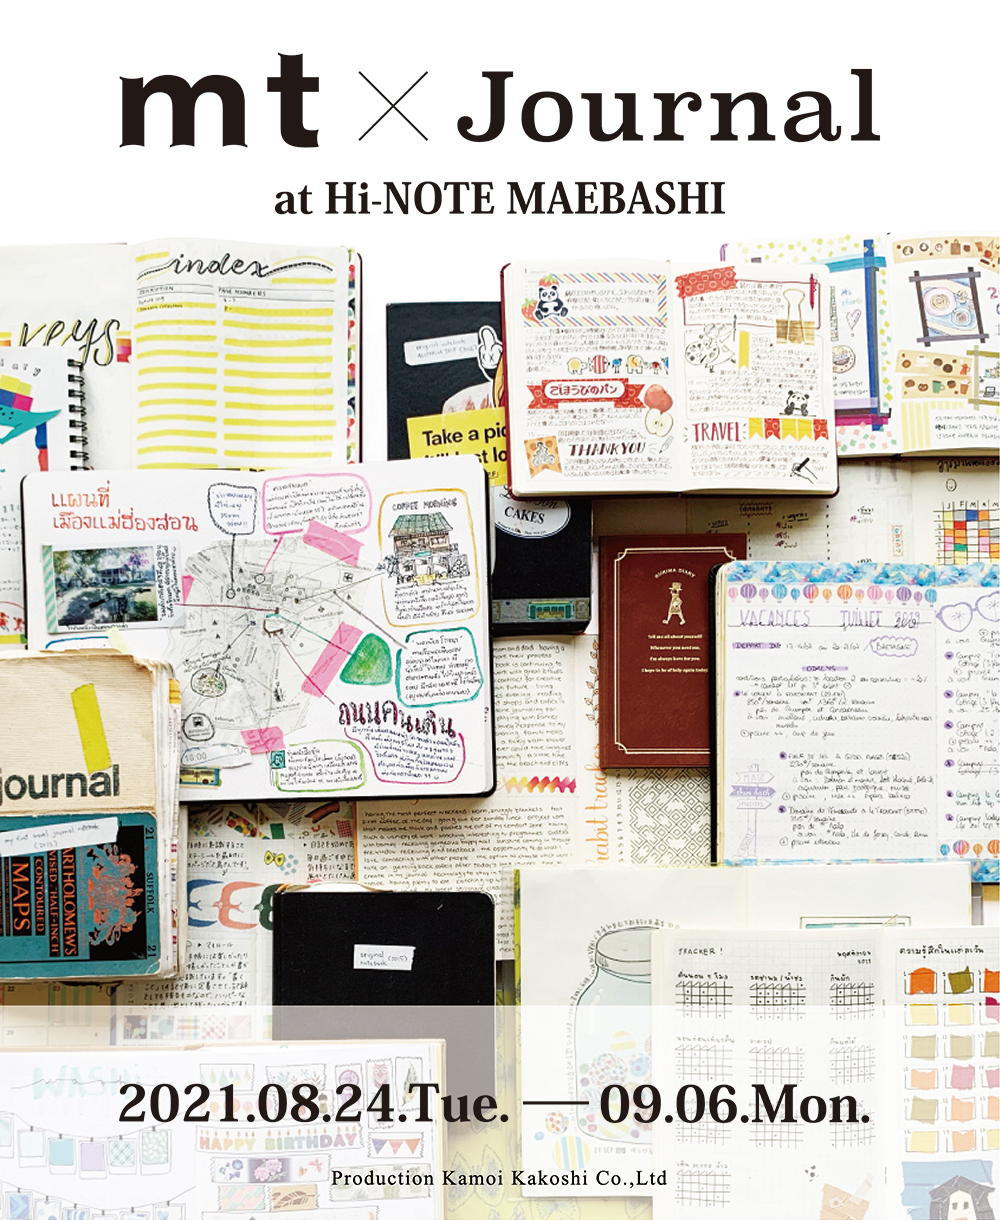 mt×Journal at Hi-NOTE MAEBASHI 開催